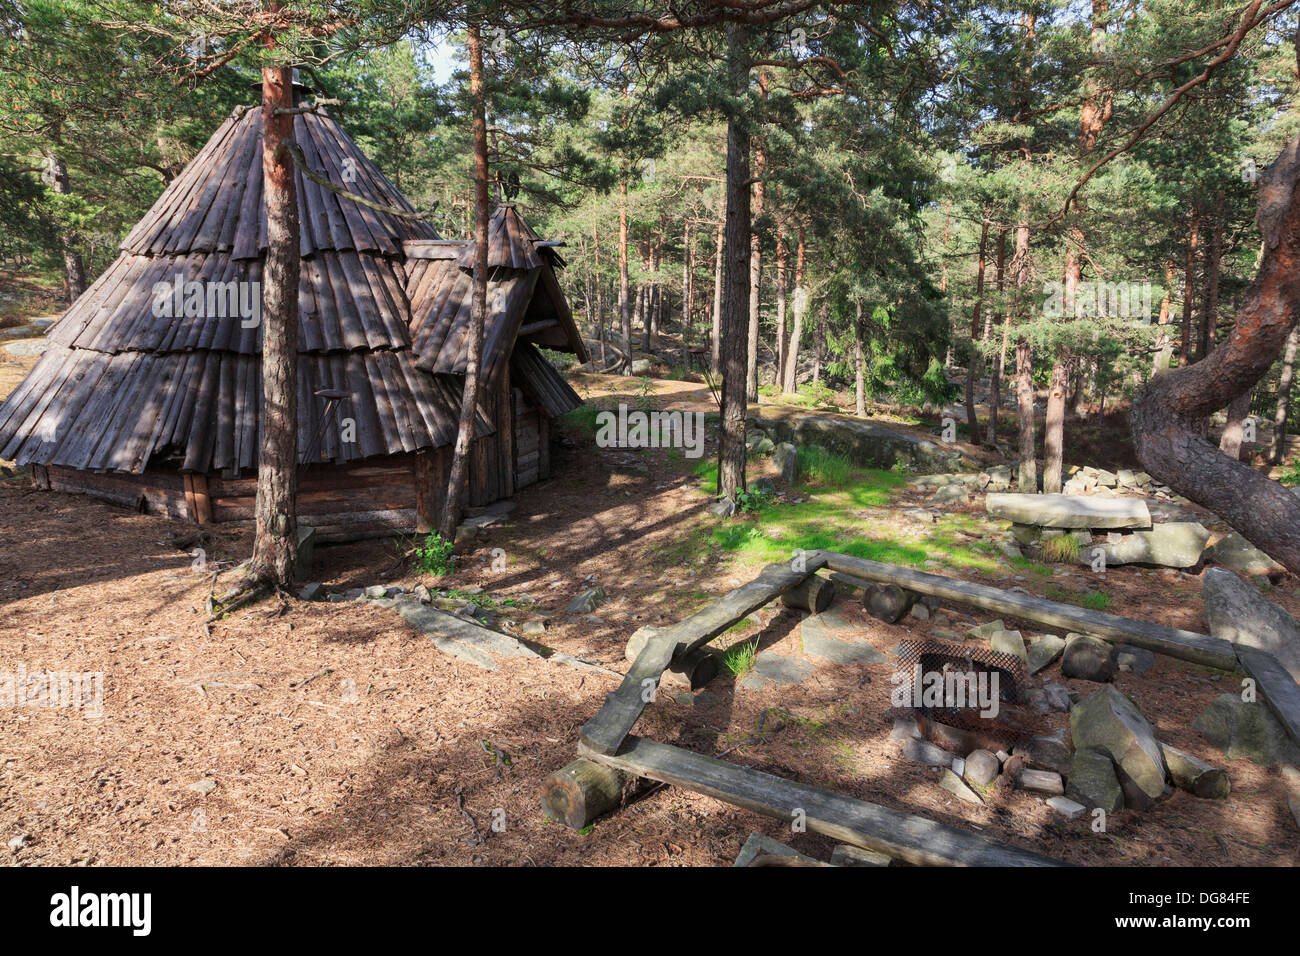 Avec un camp tipi camp et barbecue construit pour la communauté dans une forêt de pins près de Fredrikstad, Østfold, Norvège, Scandinavie Banque D'Images